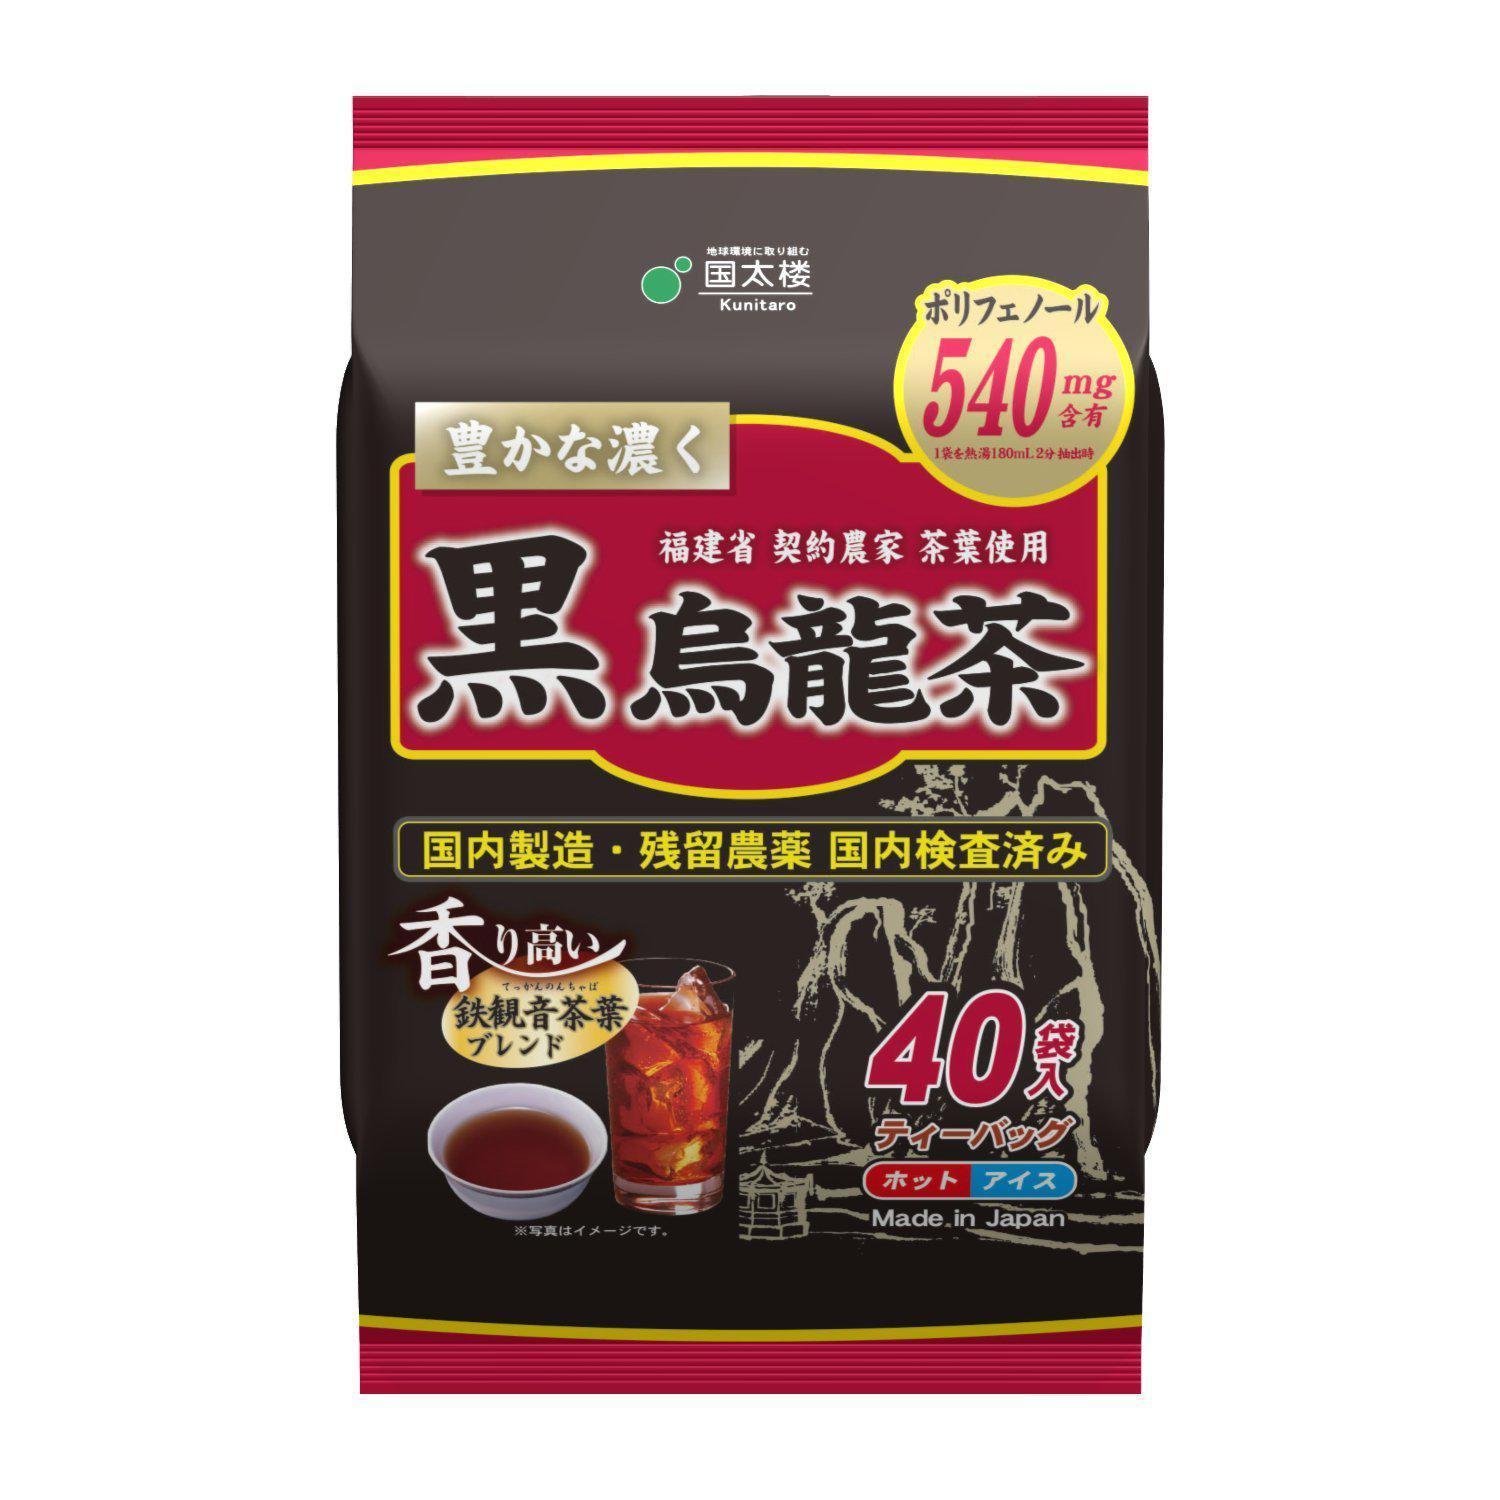 Kunitaro Black Oolong Tea 200g (40 Tea Bags), Japanese Taste